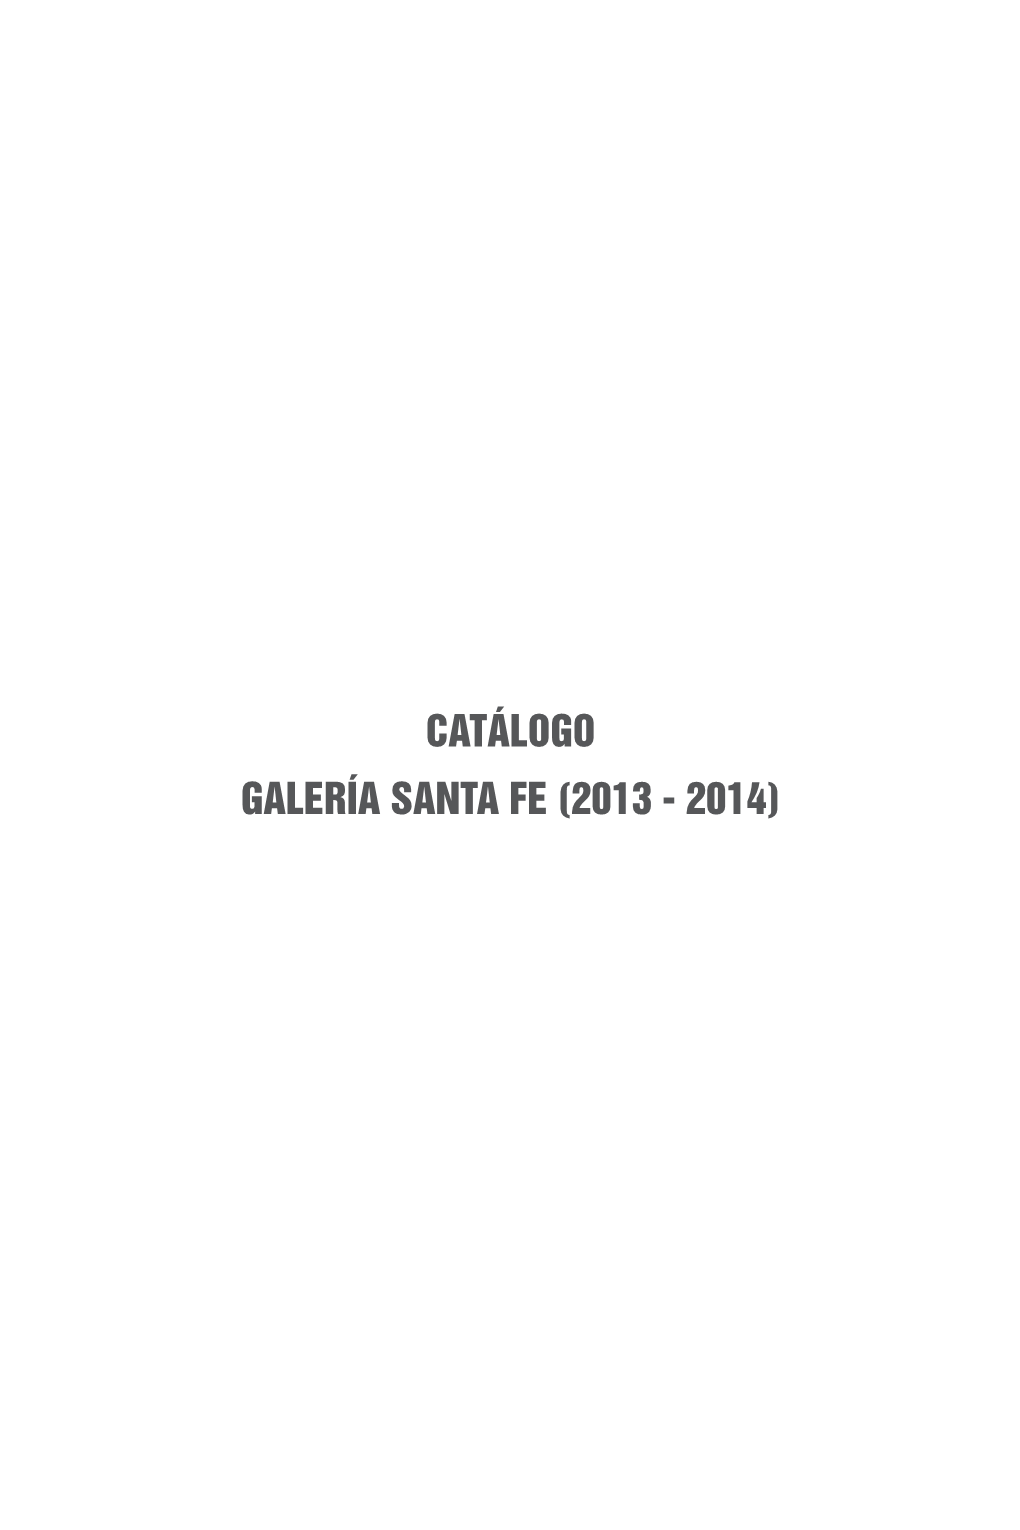 CATÁLOGO GALERÍA SANTA FE (2013 - 2014) Galería Santa Fe Catalogue of Exhibitions Catálogo De Exhibiciones Galería Santa Fe 2013-2014 2013-2014 First Edition, 2016